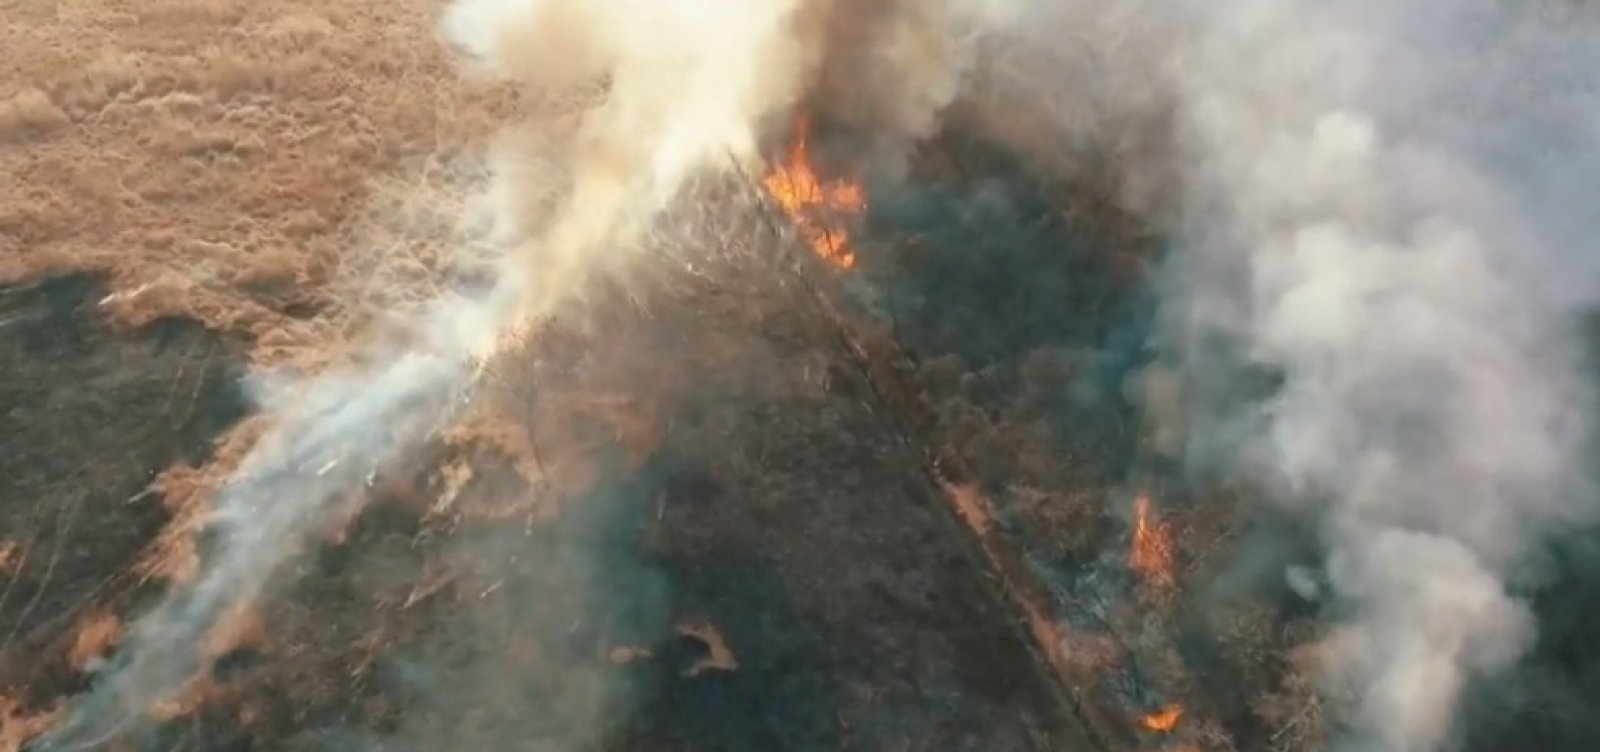 Incêndio destrói 90 hectares de vegetação no sudoeste da Bahia 